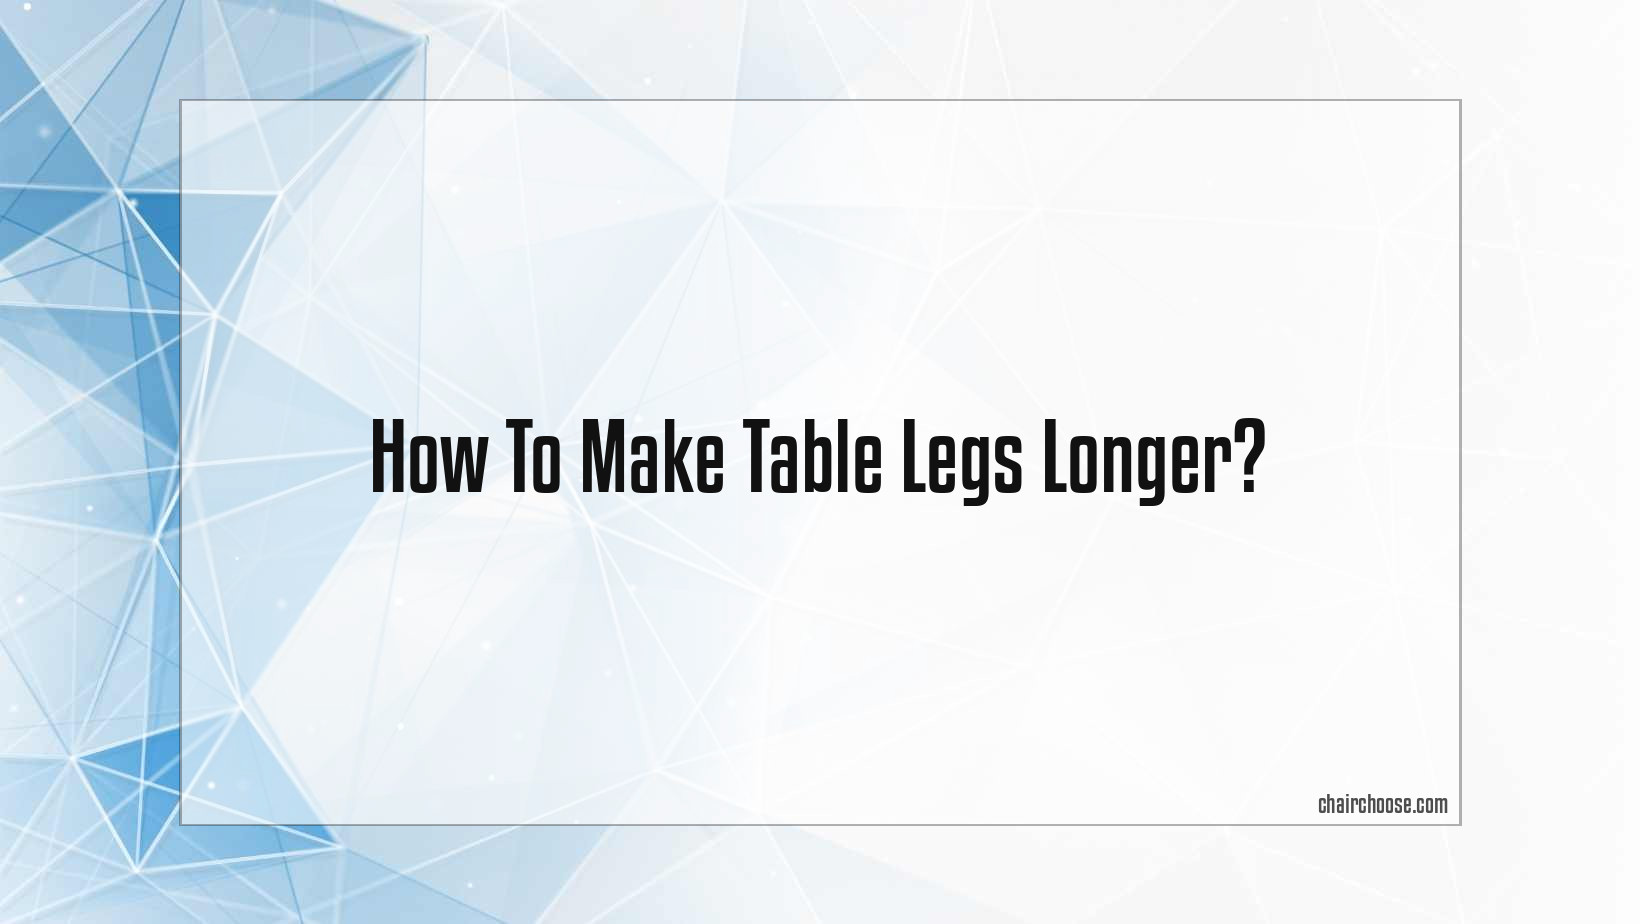 how to make table legs longer